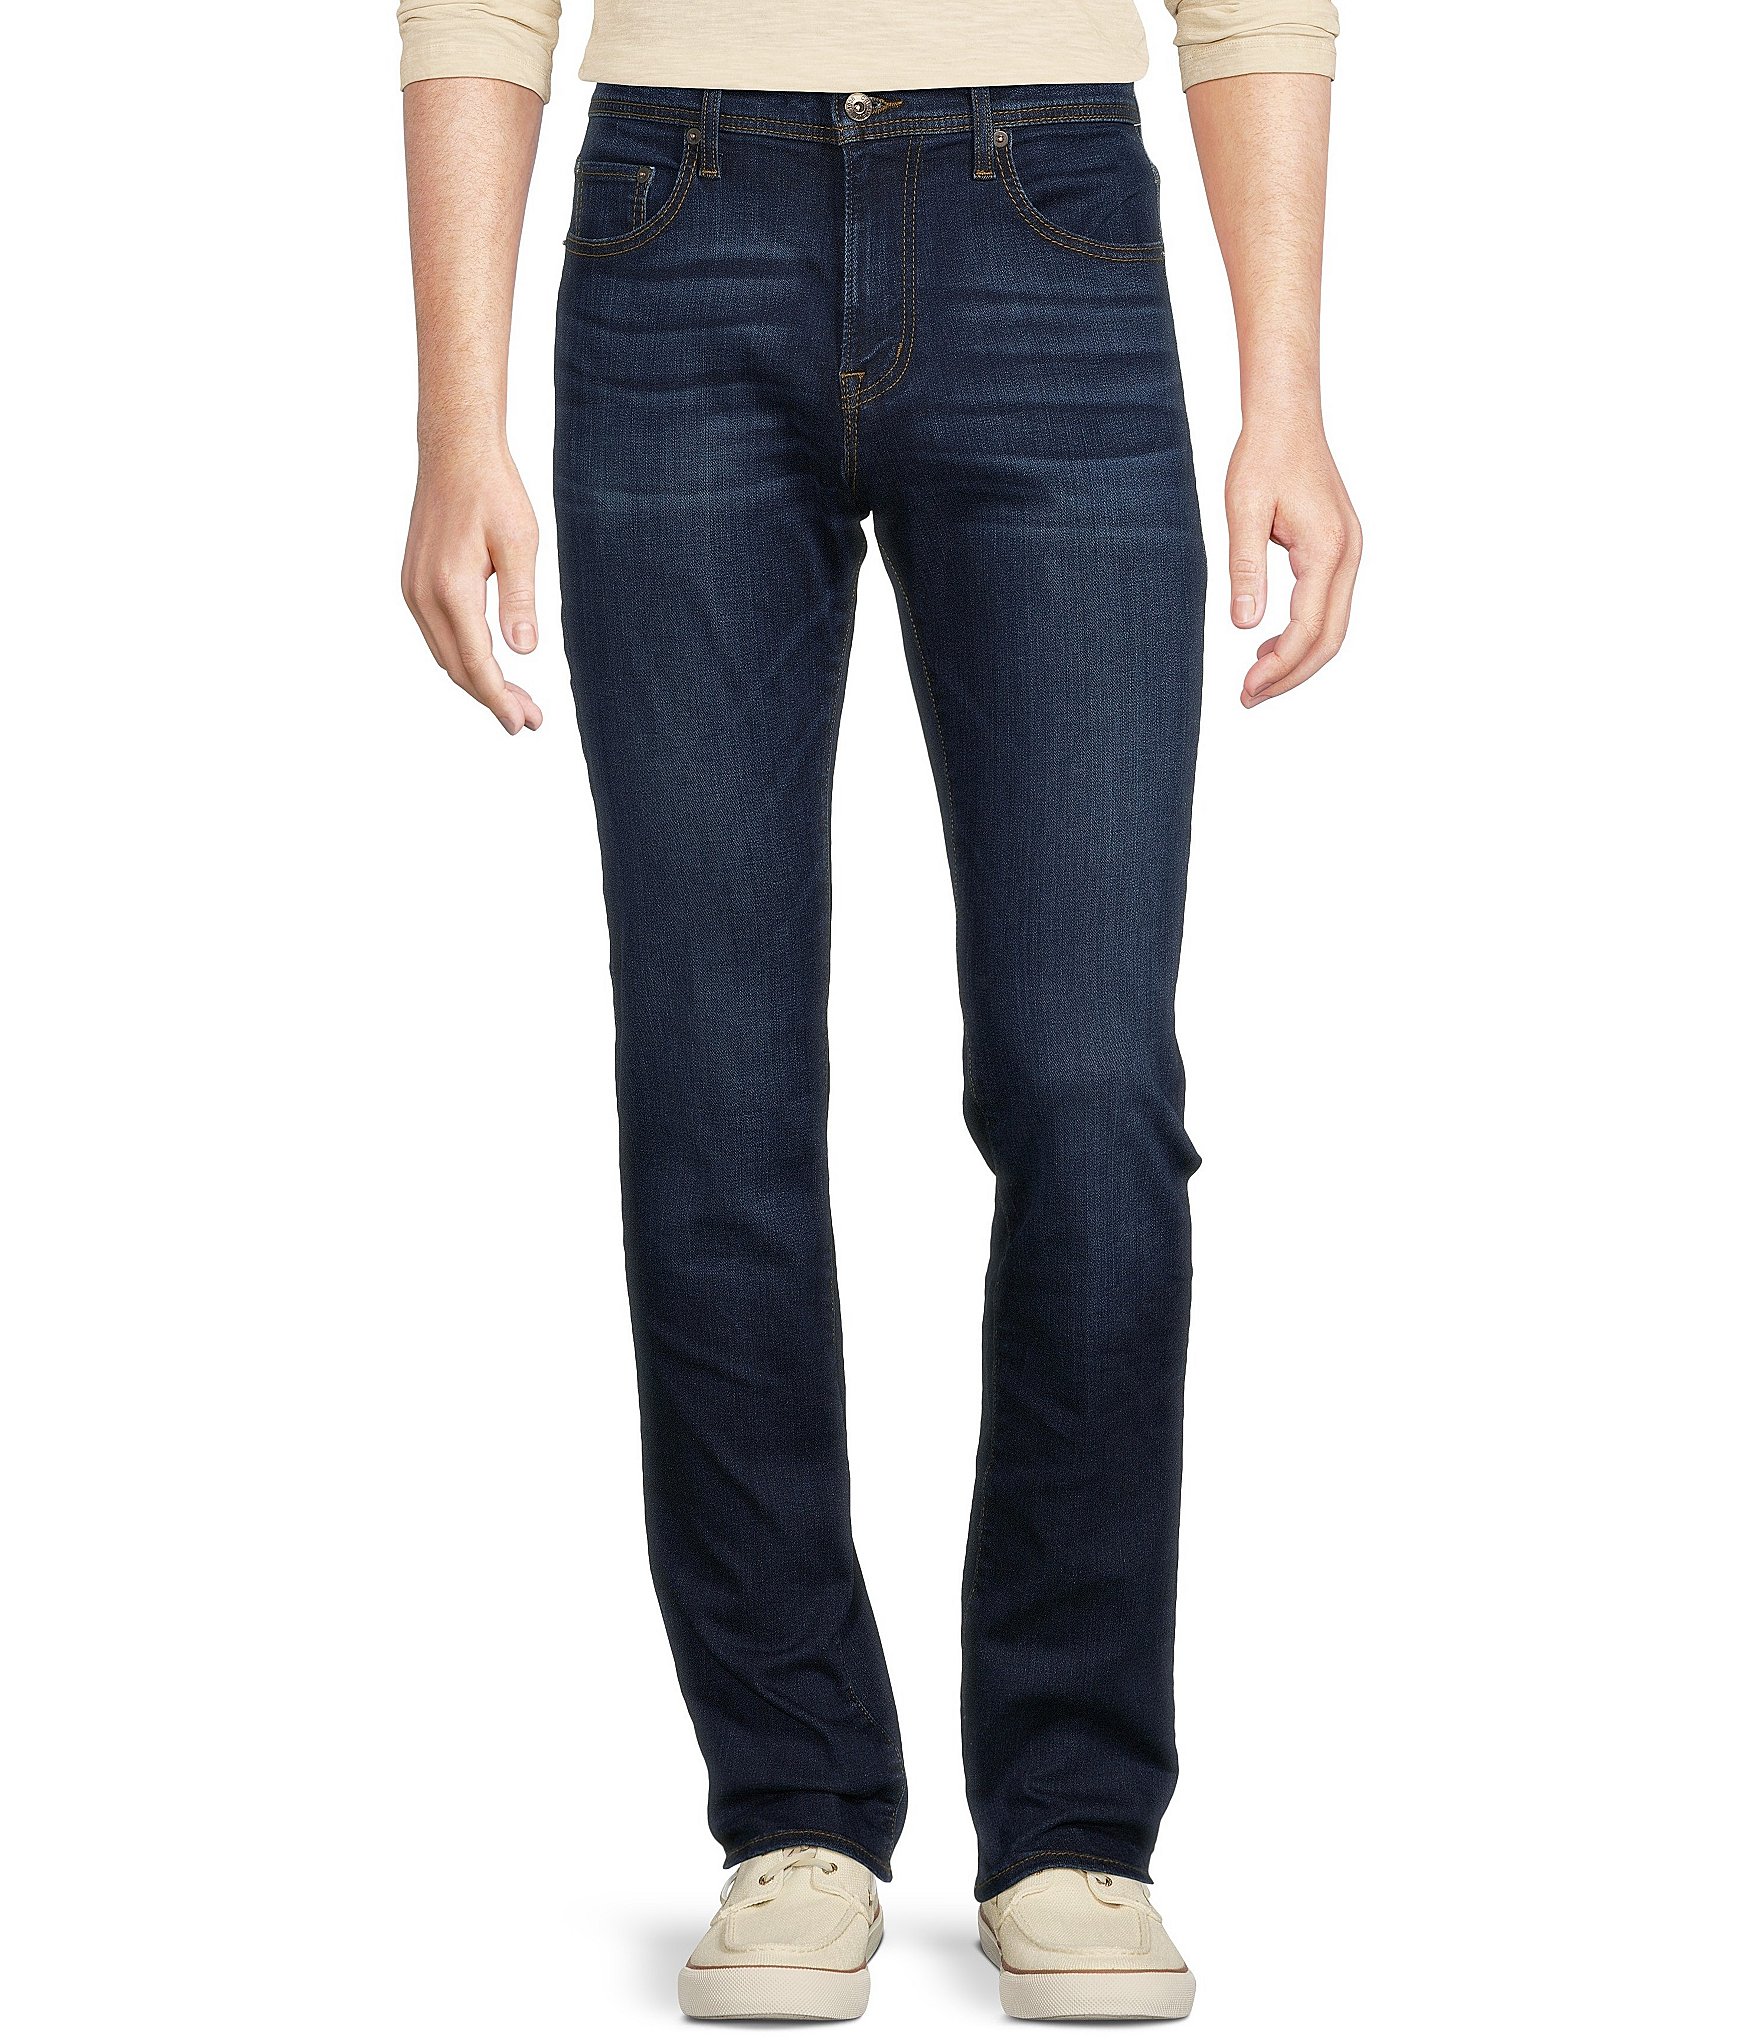 Premium Denim Straight Fit Stretch Blue Jeans | Dillard's